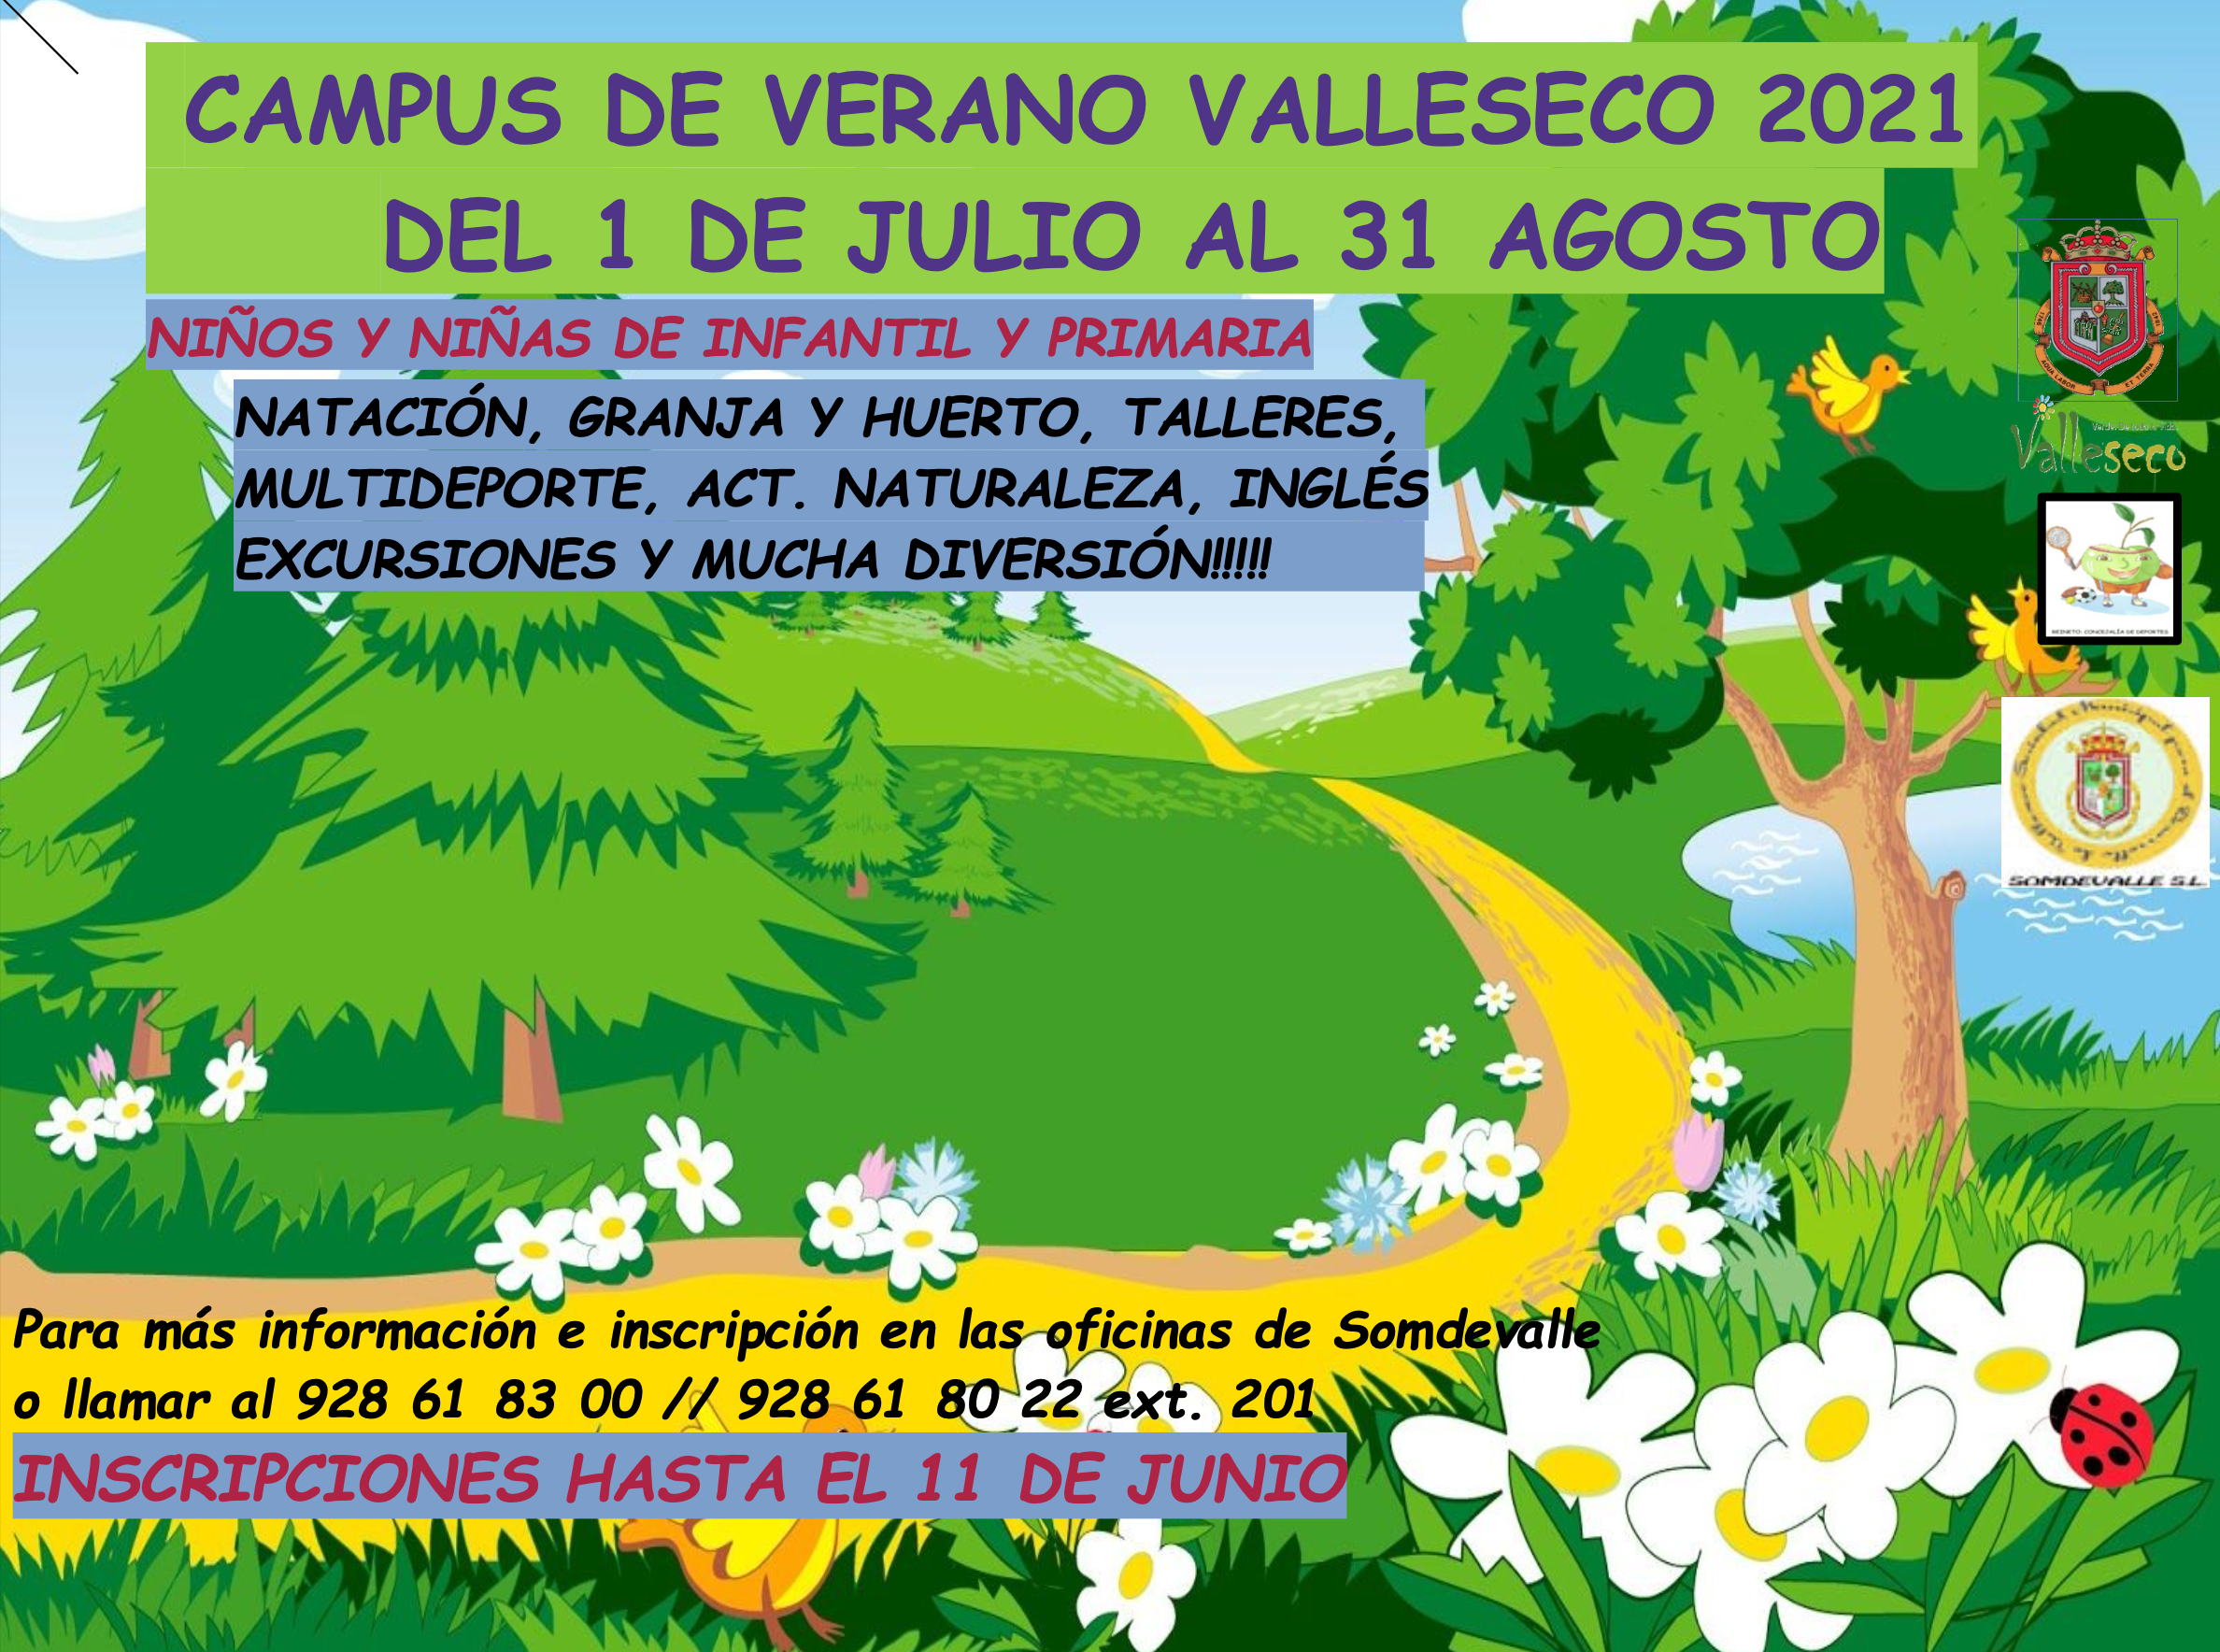 Inscripciones abiertas para el Campus de Verano de Valleseco 2021 / CanariasNoticias.es